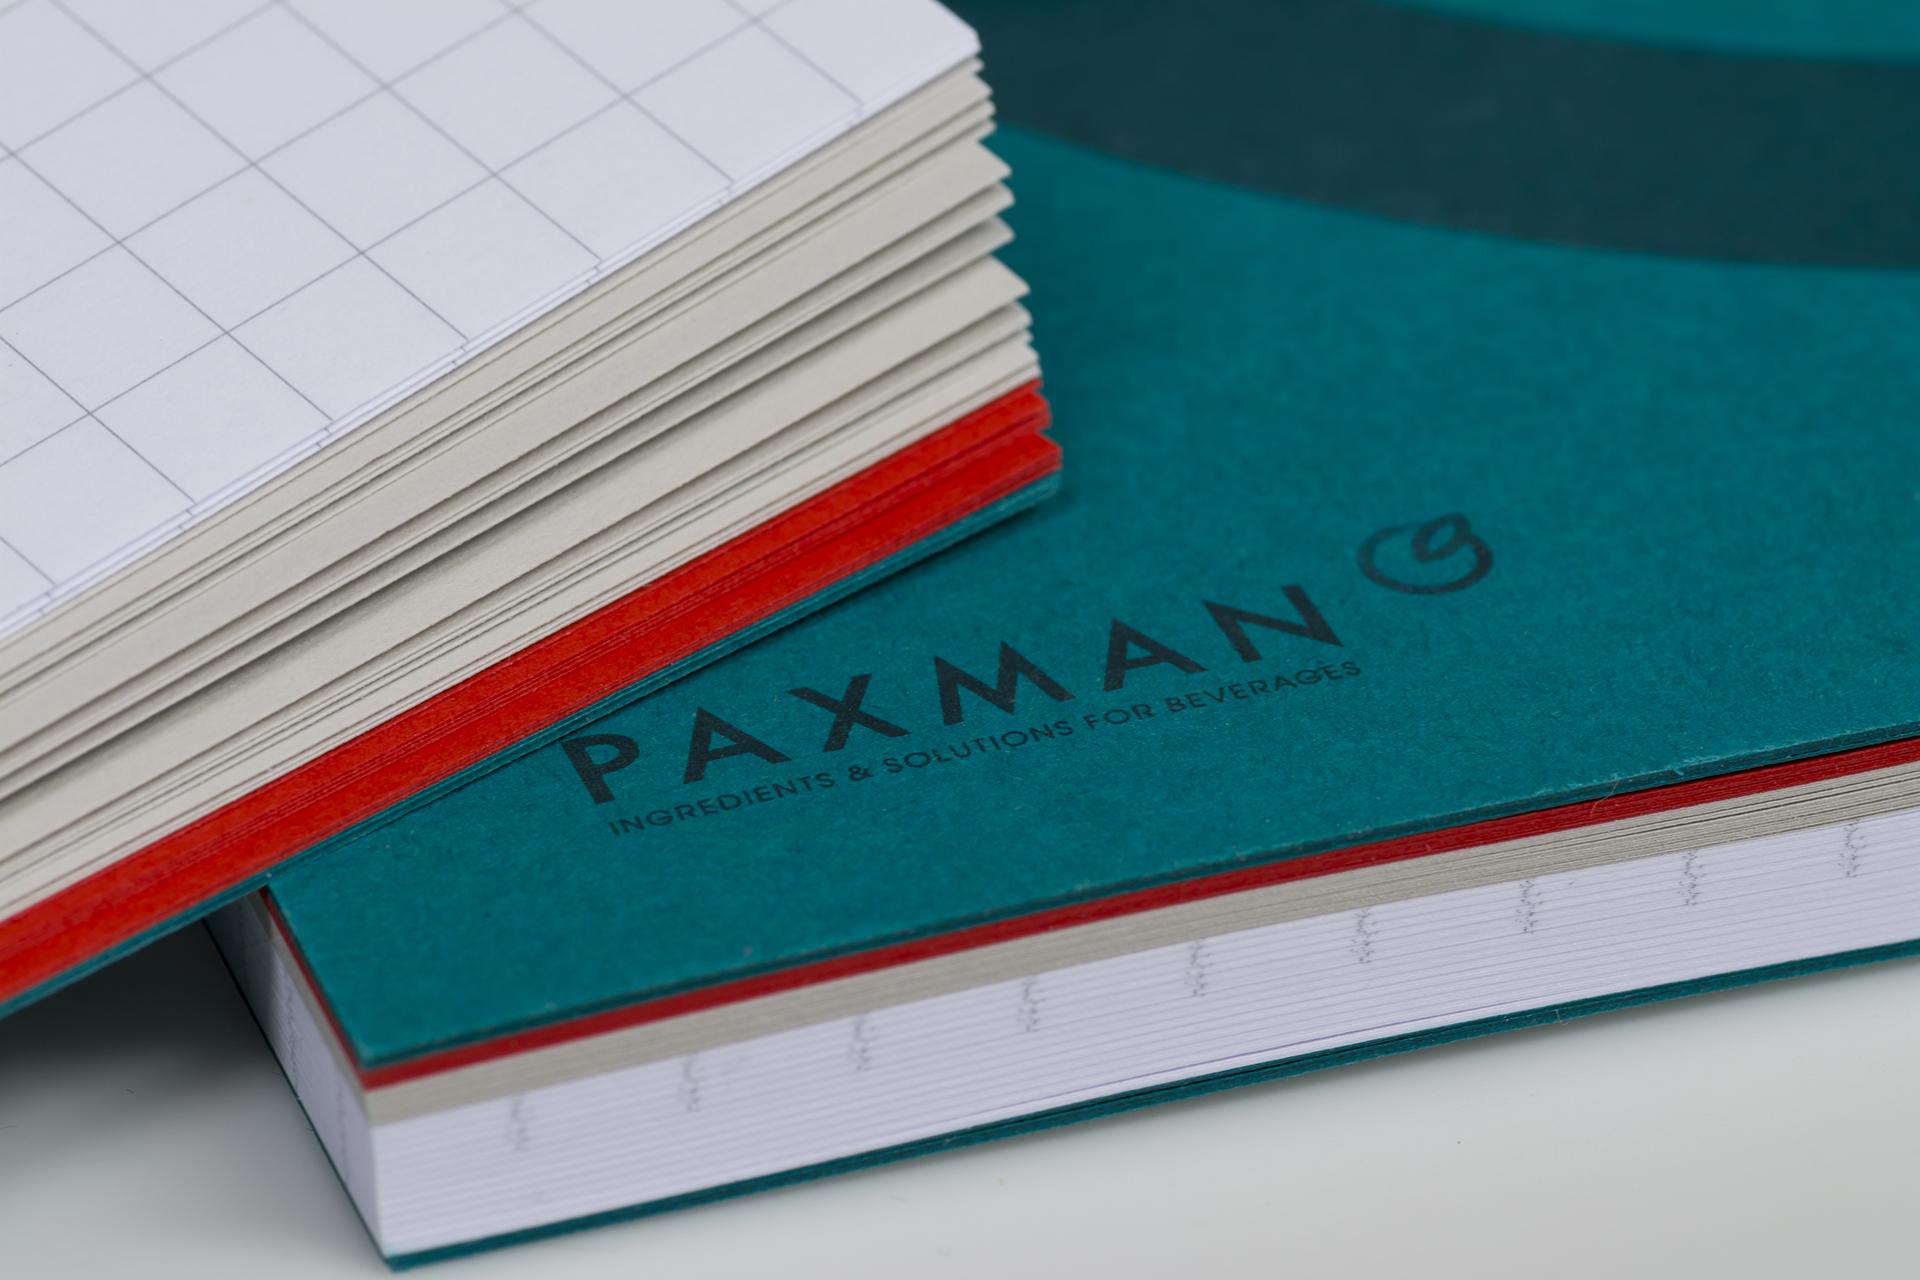 Paxman notebook